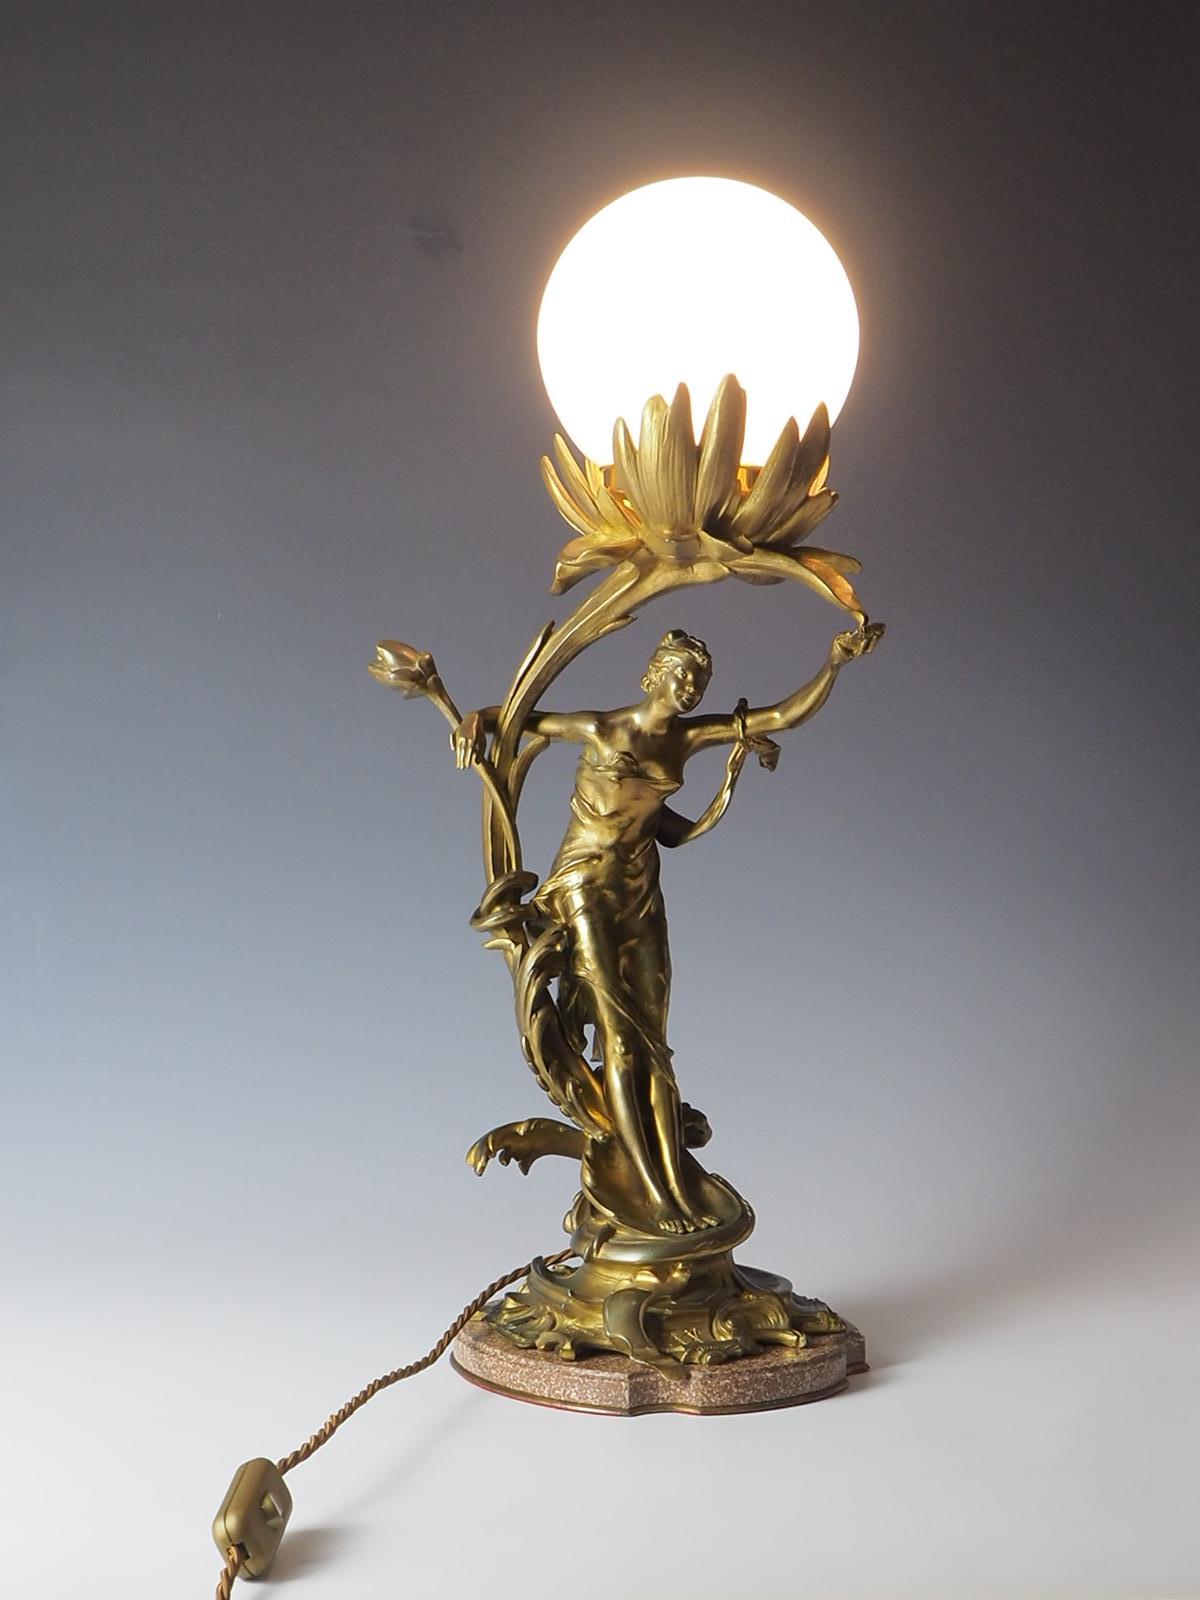 French Bronze Art Nouveau Lady Antique Table Lamp For Sale